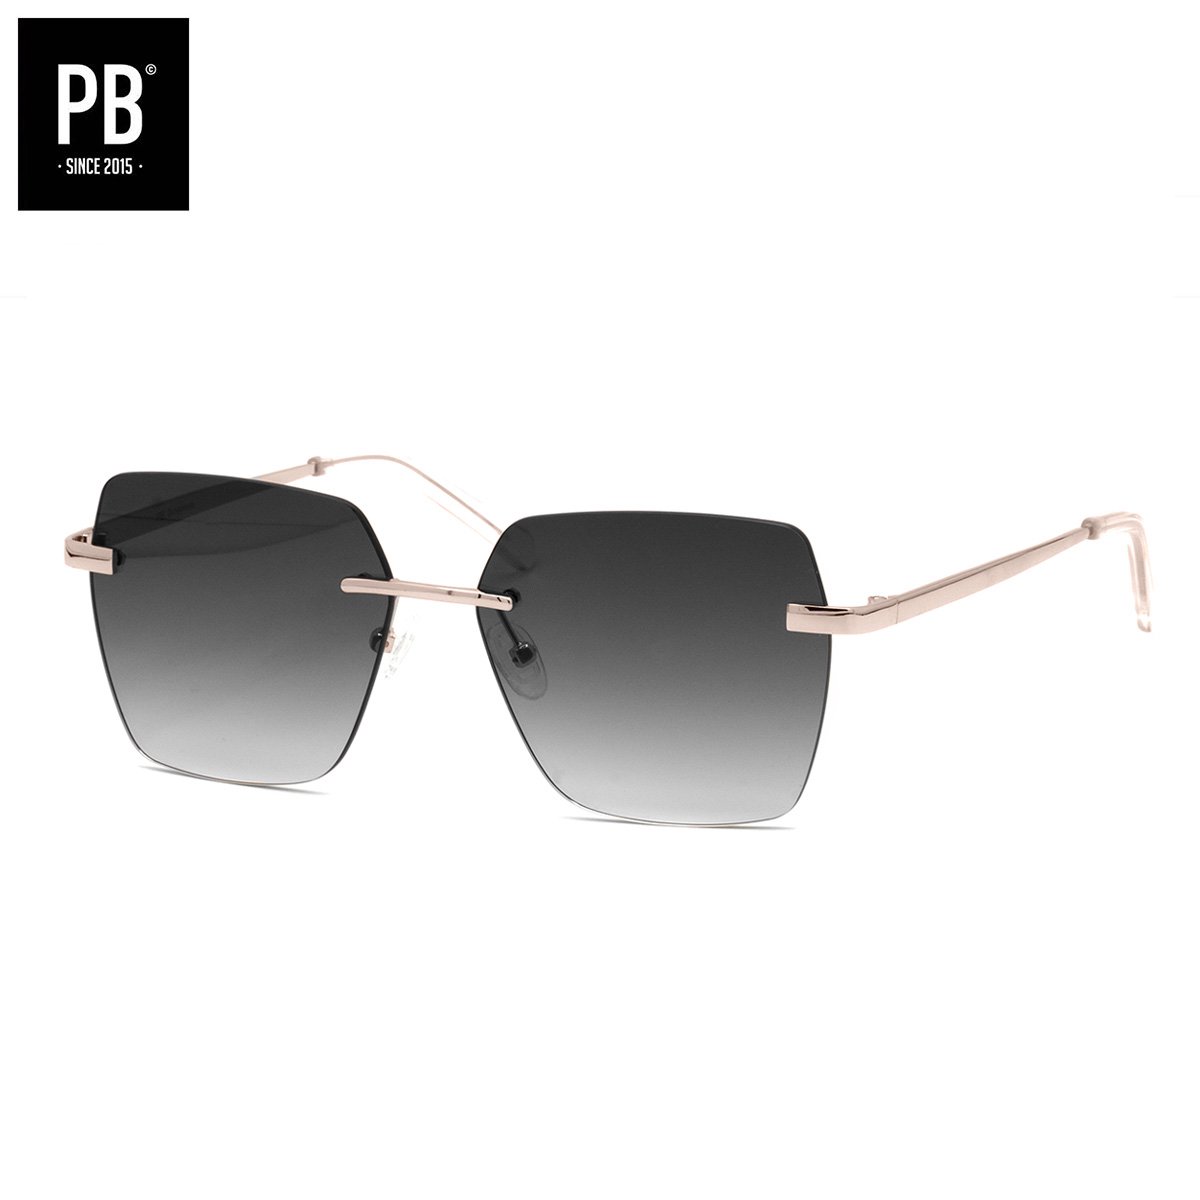 PB Sunglasses - Florence Gradient Grey. - Zonnebril dames gepolariseerd - Metaal frame - Randloze stijl